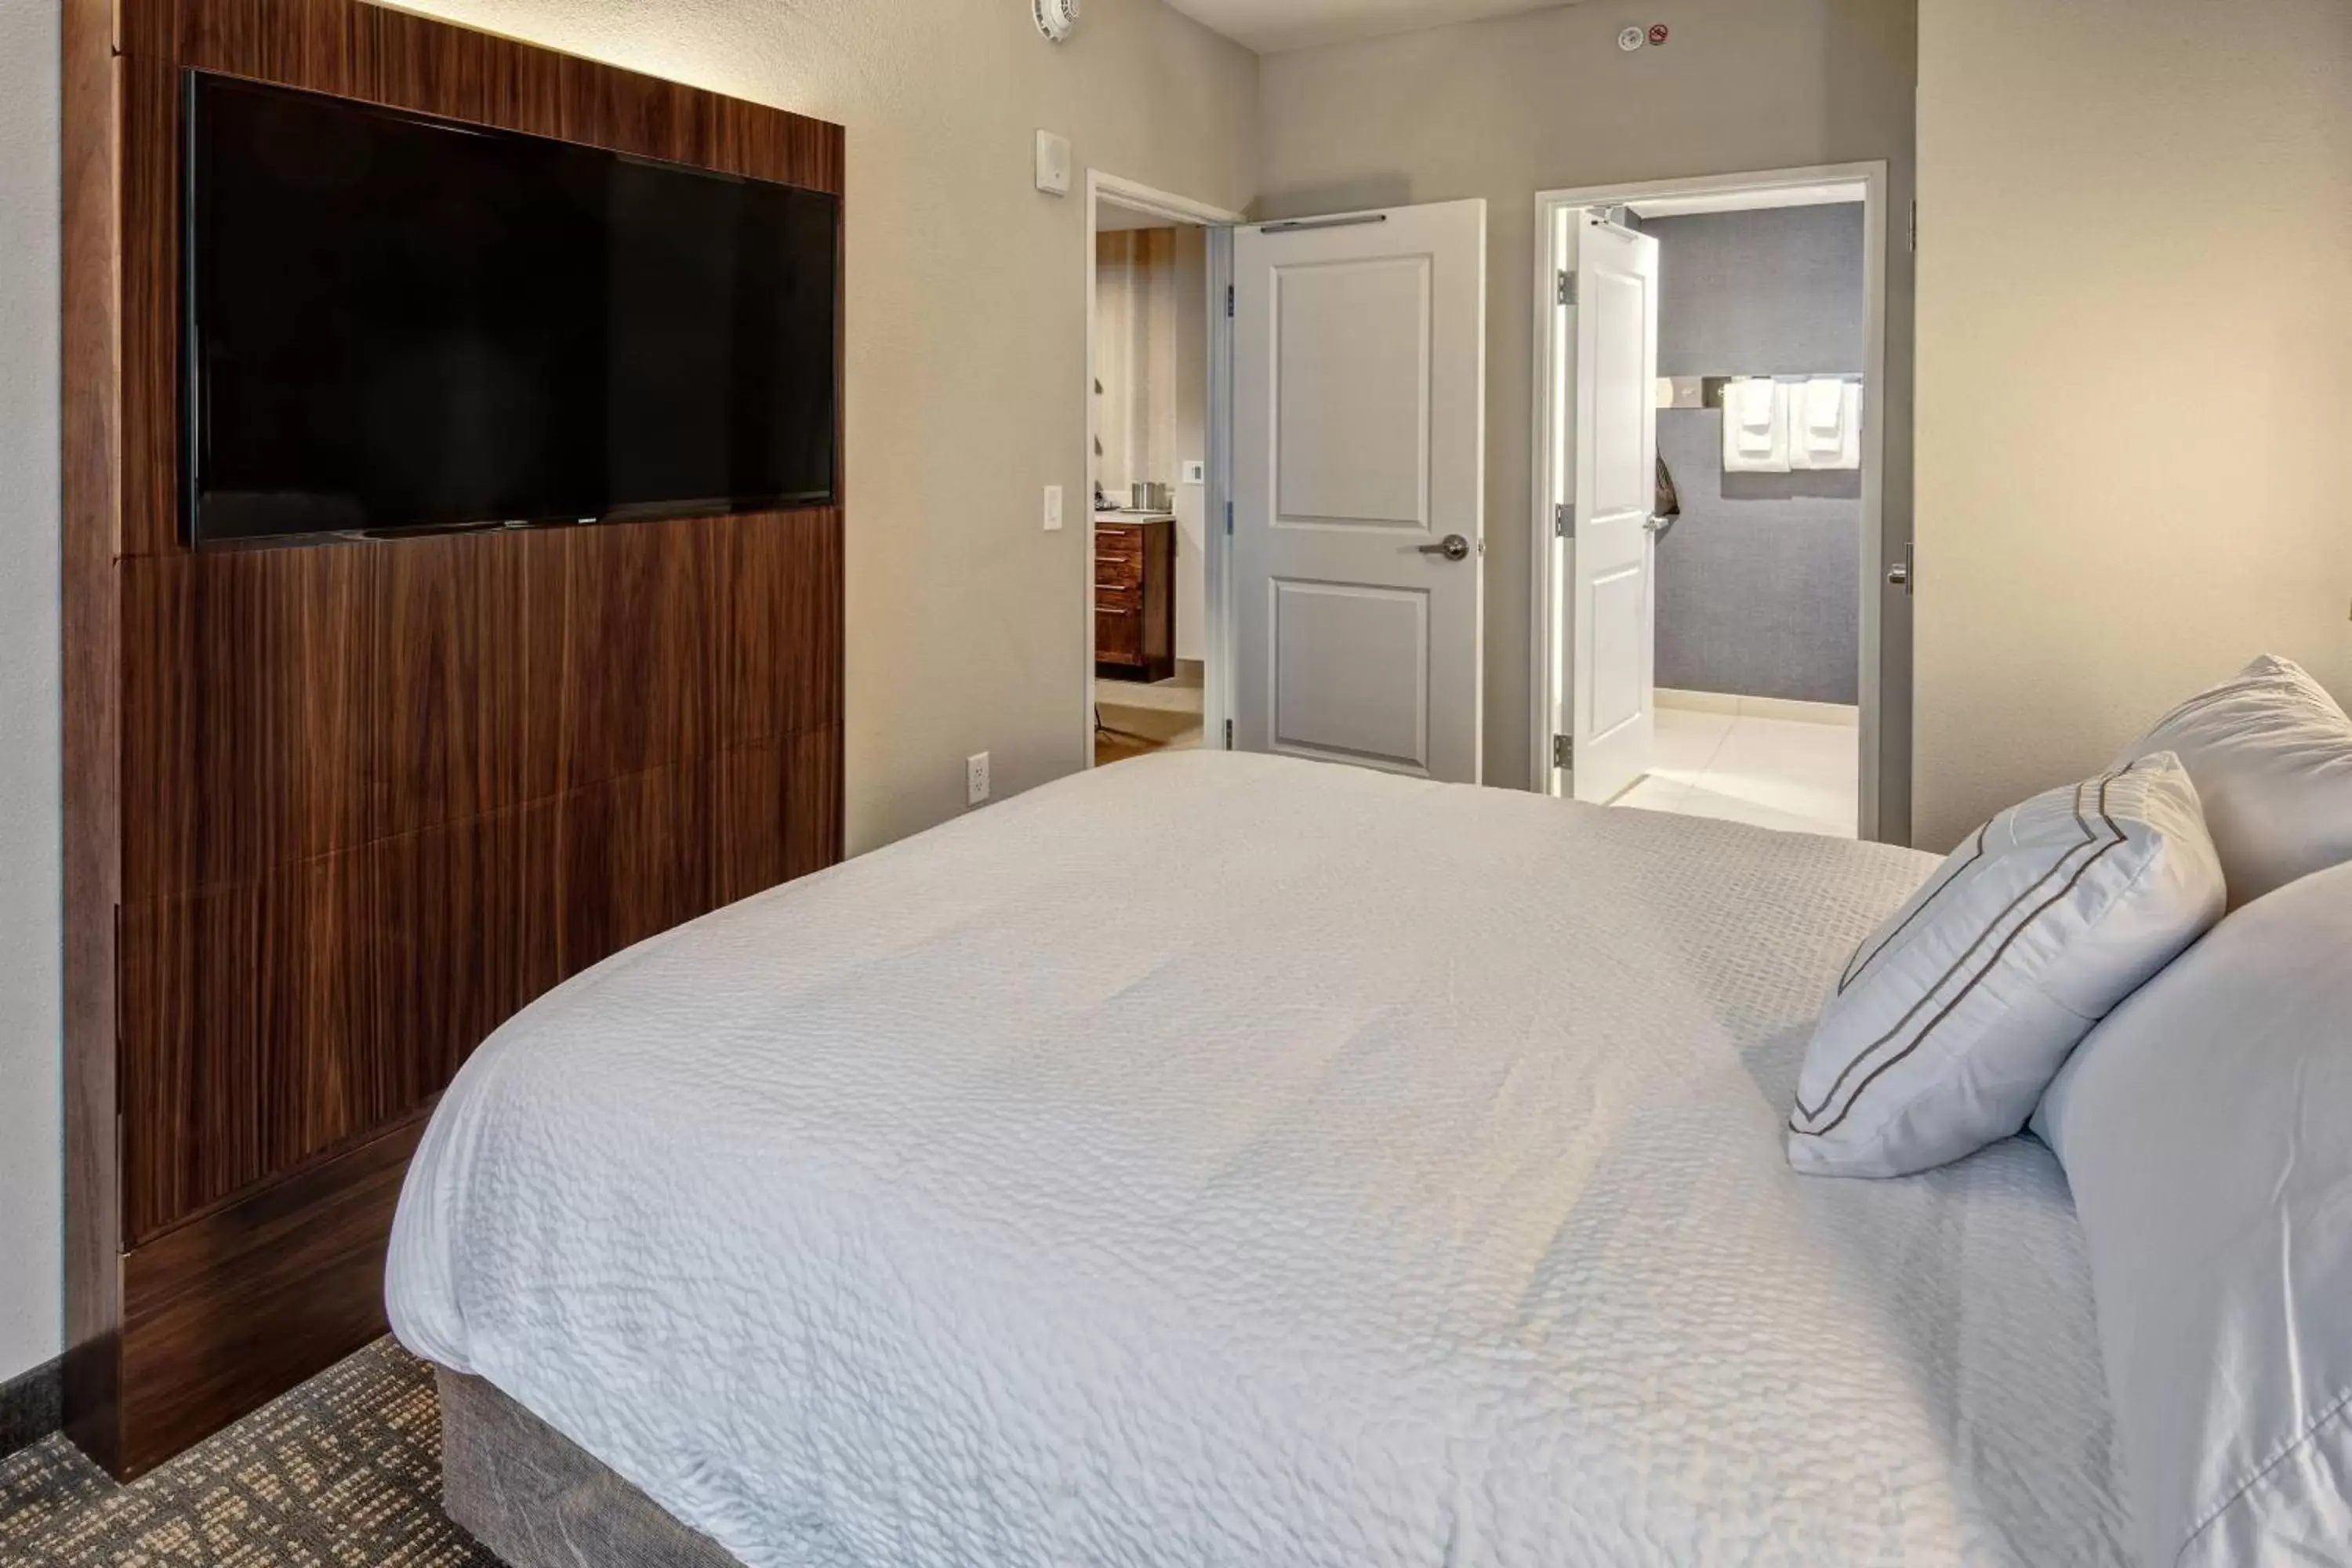 Bedroom, TV/Entertainment Center in Residence Inn by Marriott Nashville Green Hills